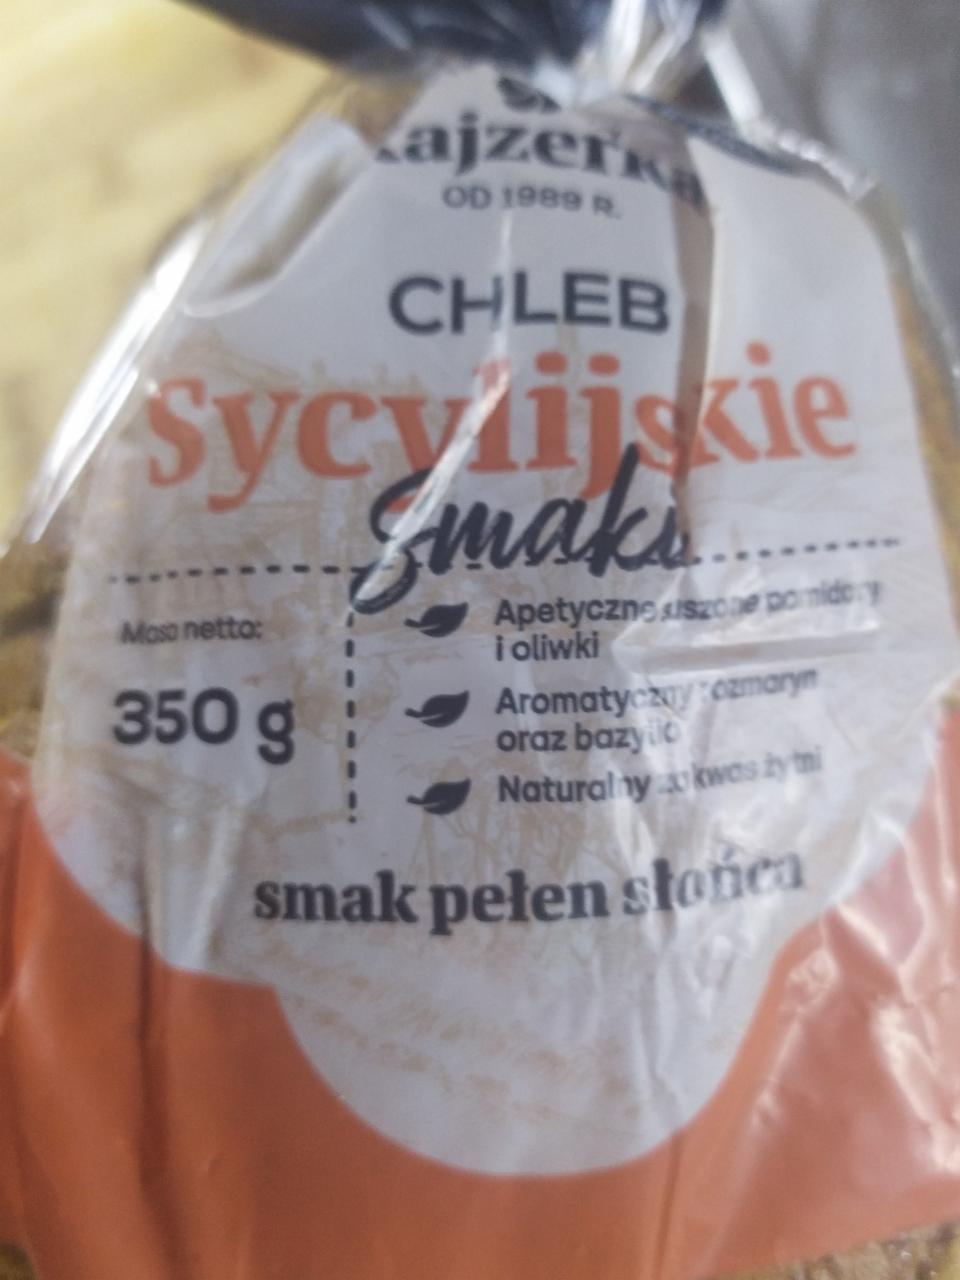 Fotografie - Chleb sycylijskie smaki Kajzerka